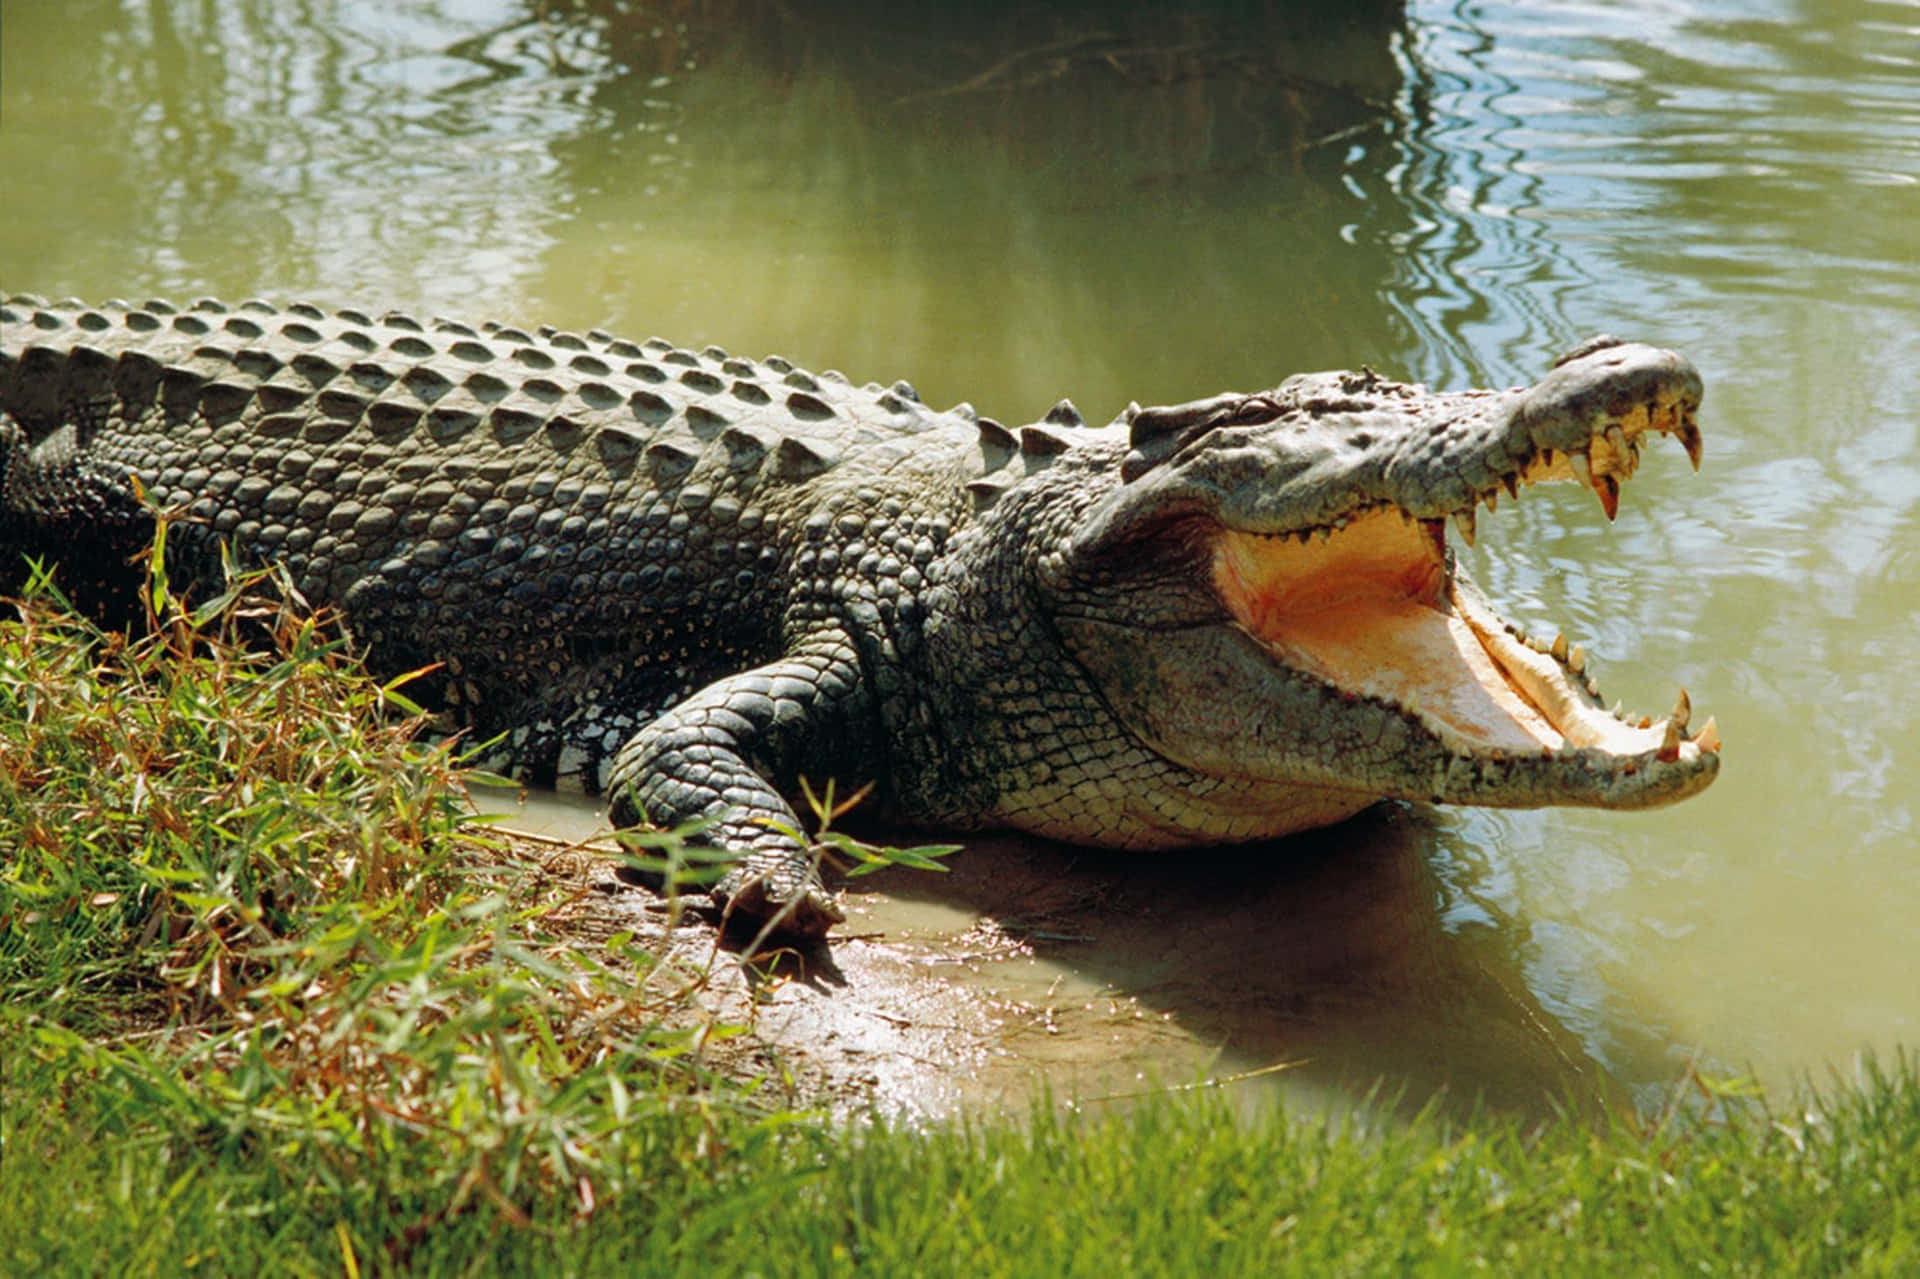 Grassy Wild Scary Crocodile Picture